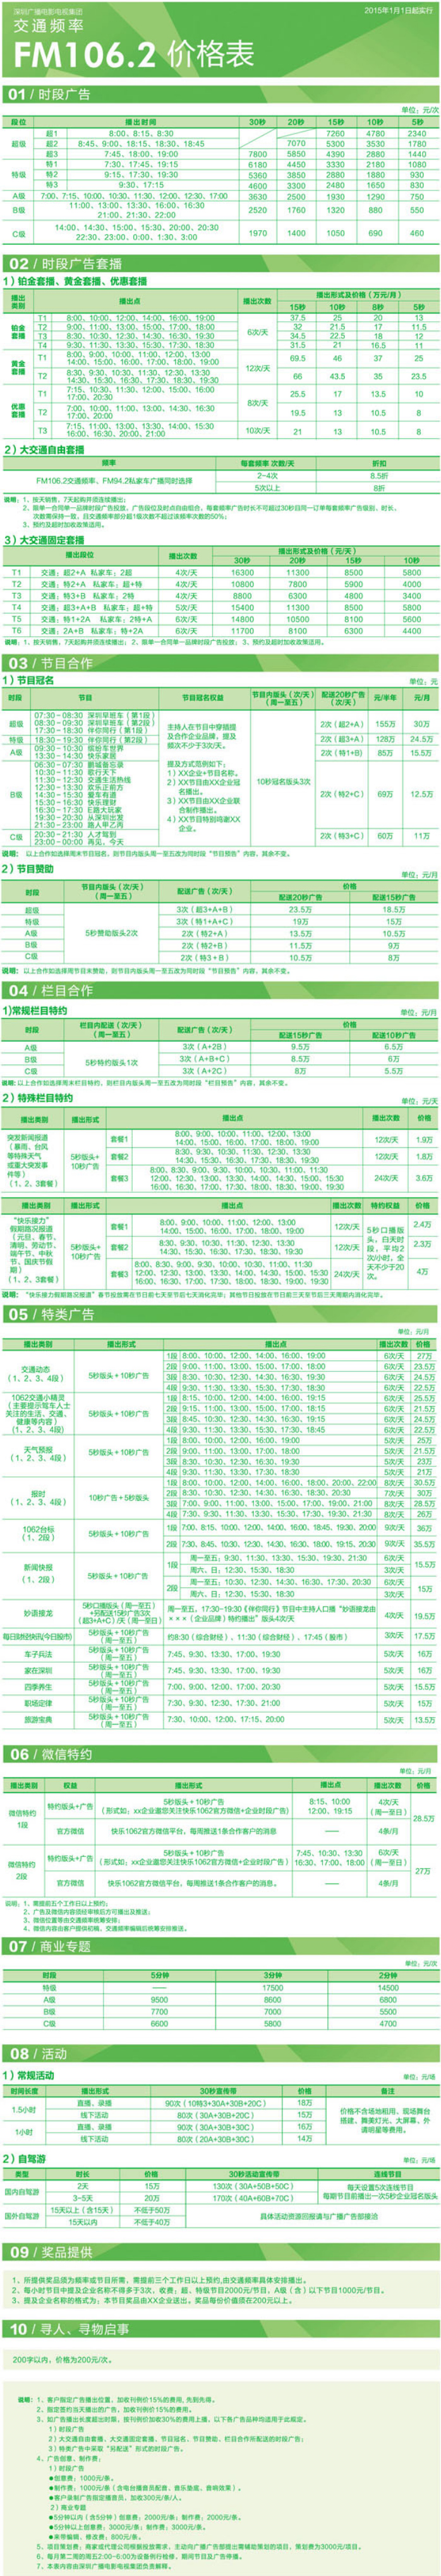 2015深圳人民广播电台交通频率 FM106.2广告报价表.jpg